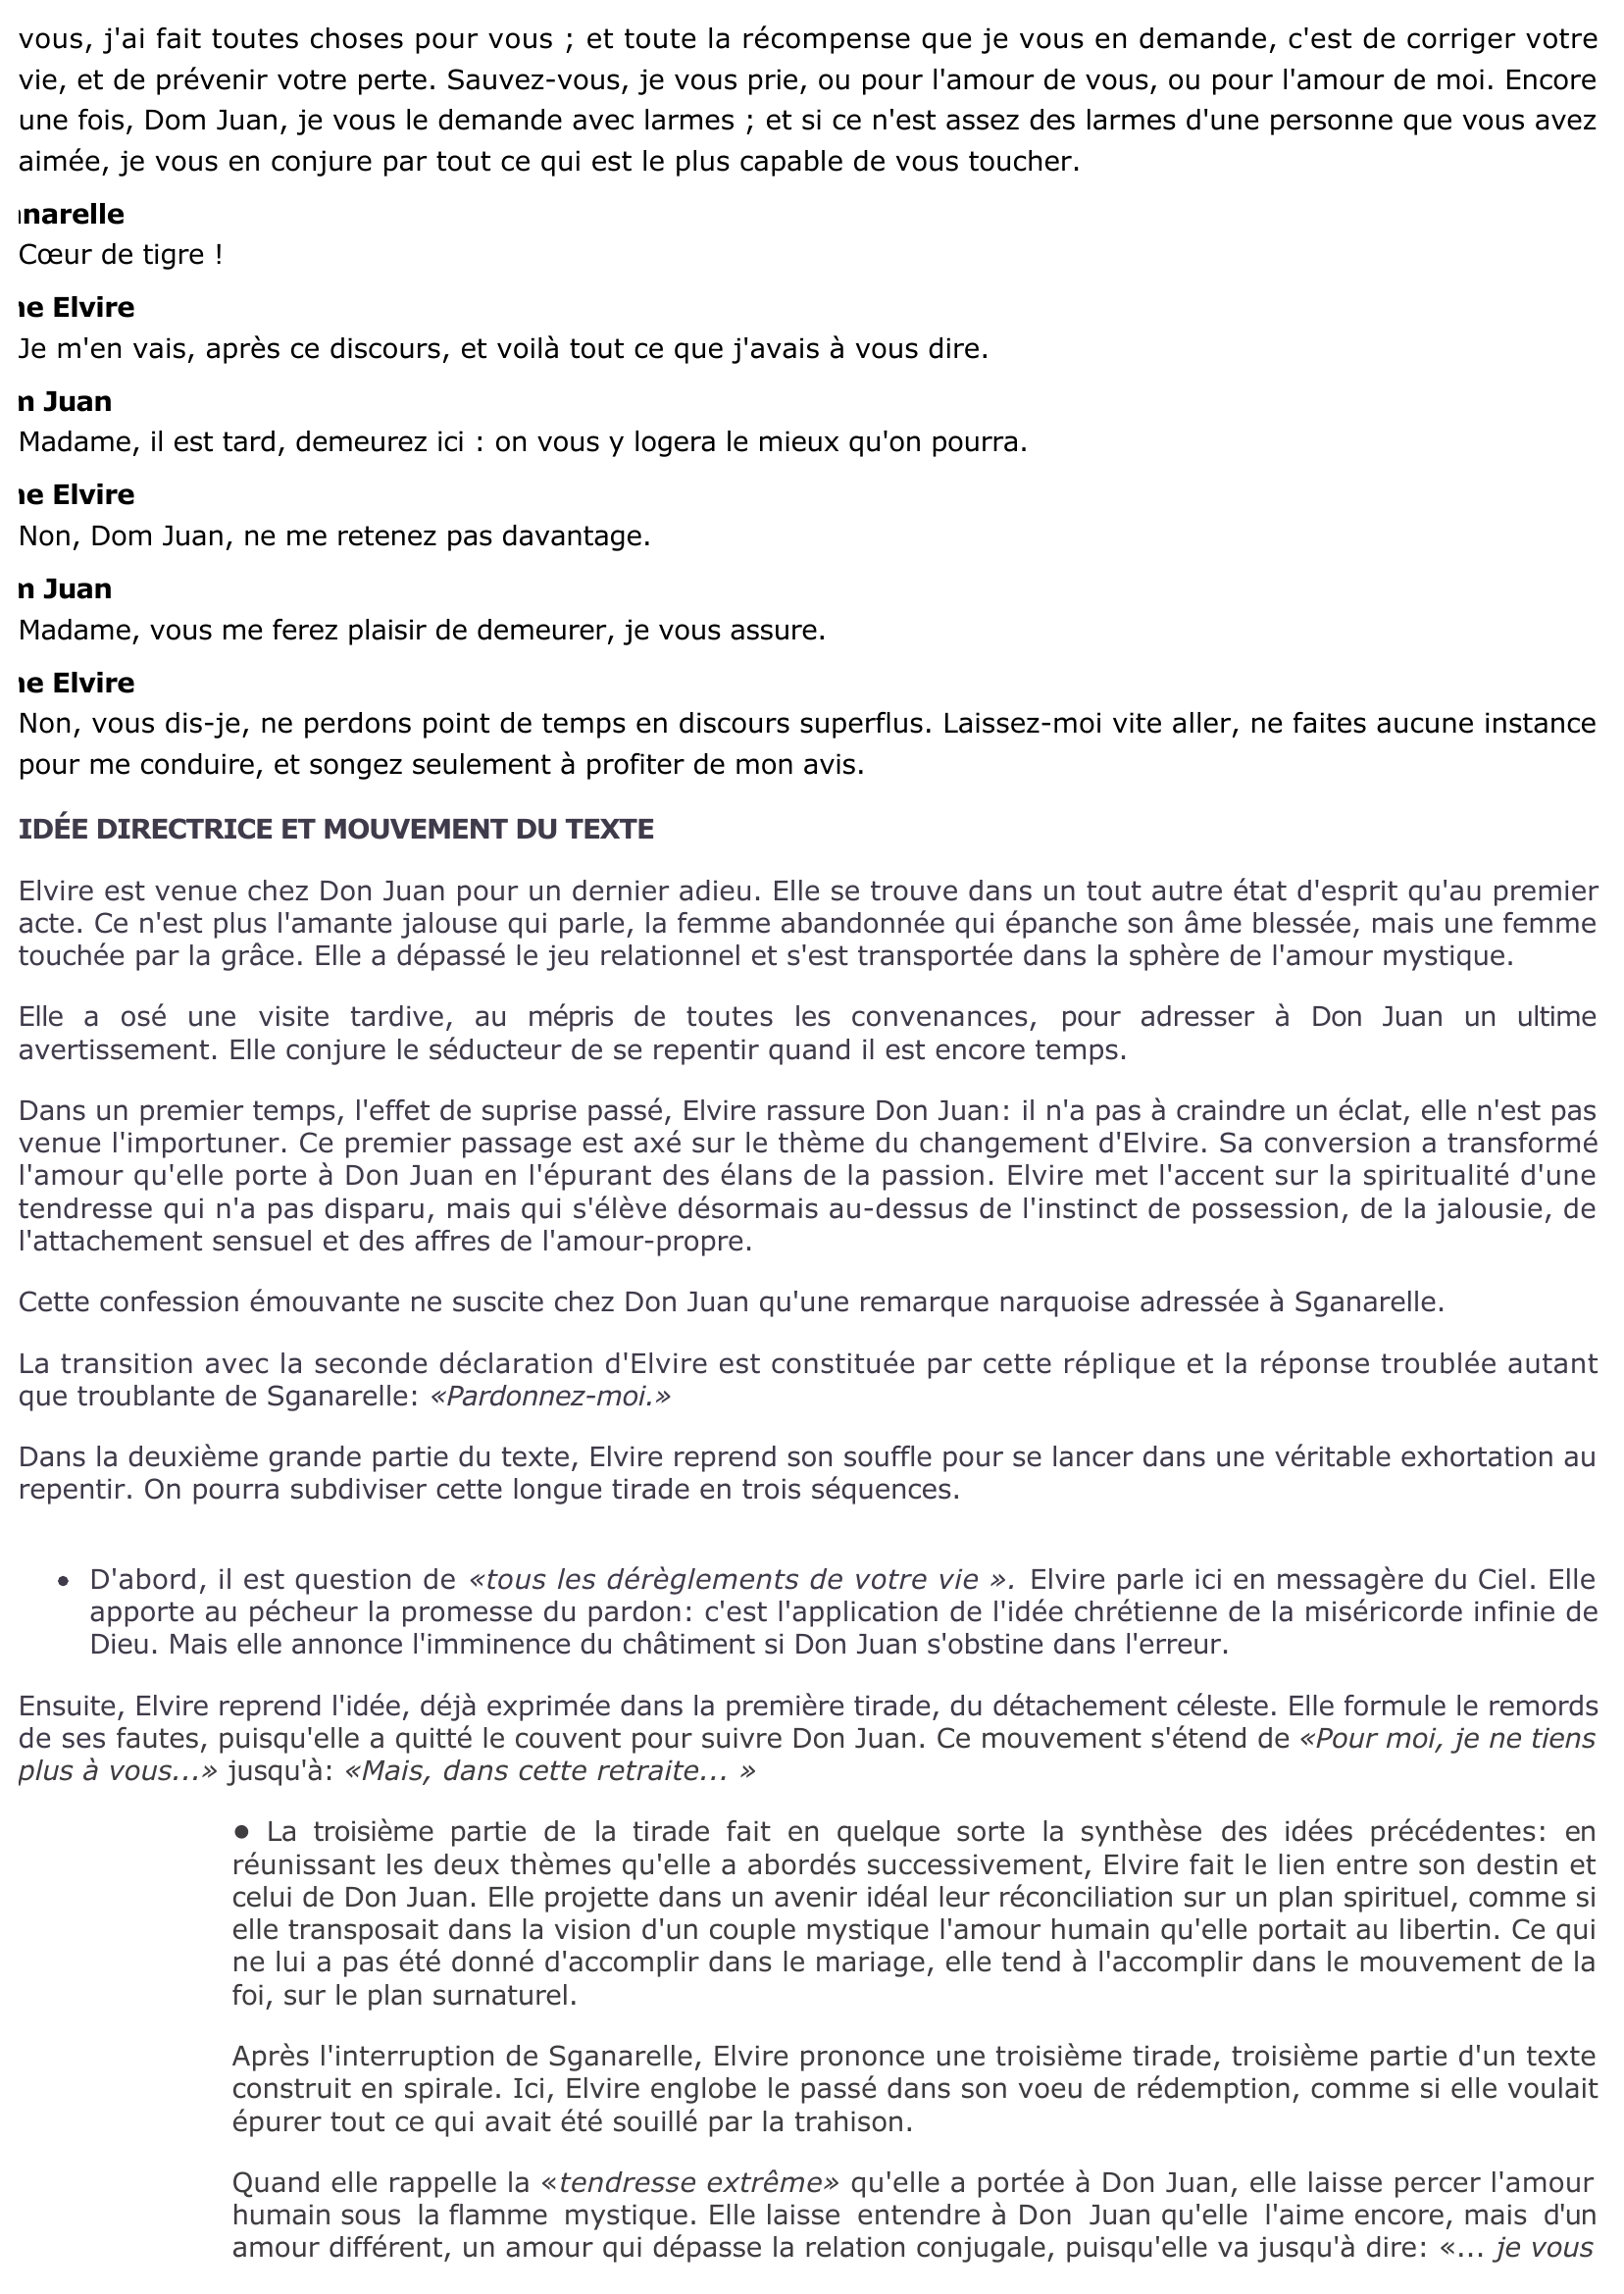 Prévisualisation du document Acte IV, scène 6 - DOM JUAN de Molière :  Elvire annonce sa conversion